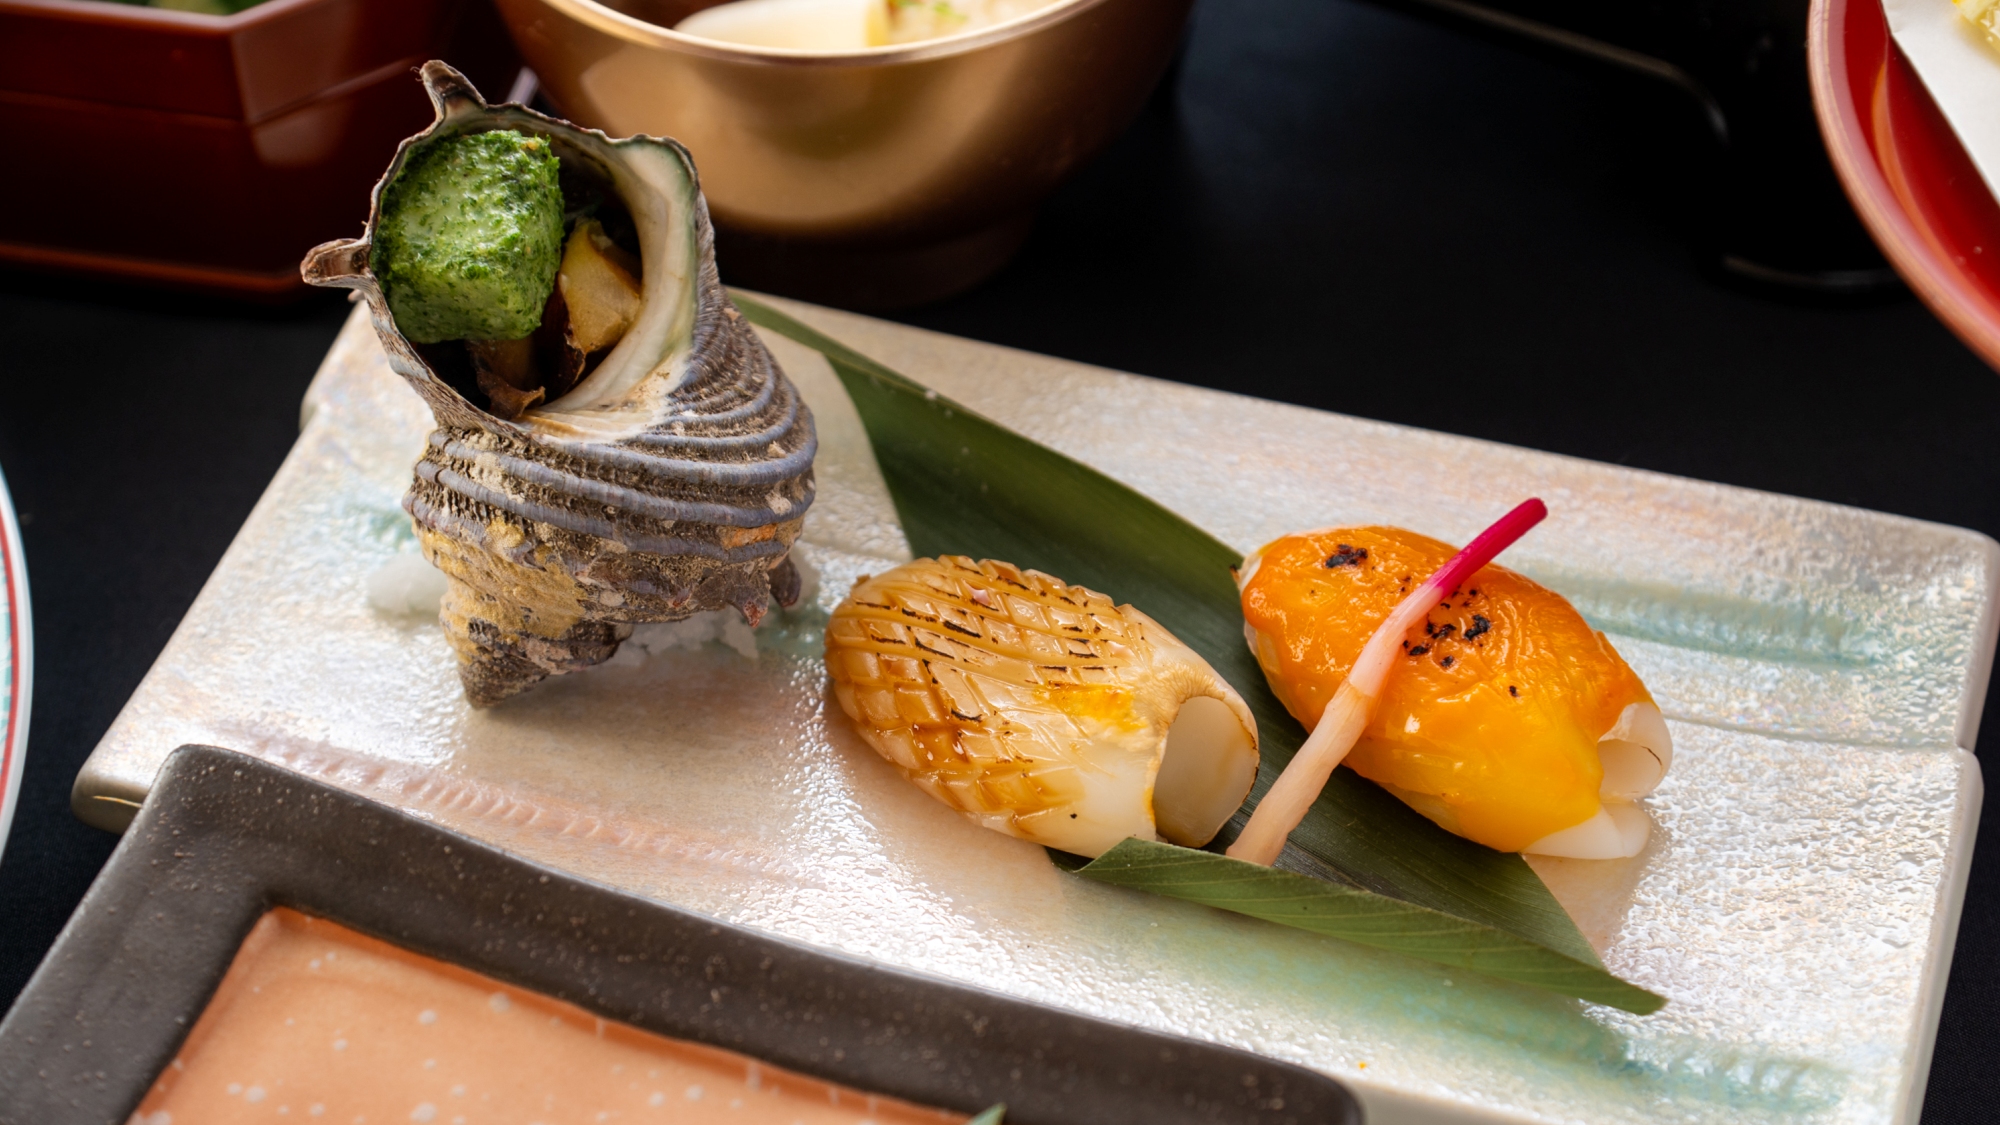 【下関満関善席】北浦産栄螺のエスカルゴバター、特牛烏賊の素焼きと松笠焼きの2種盛り